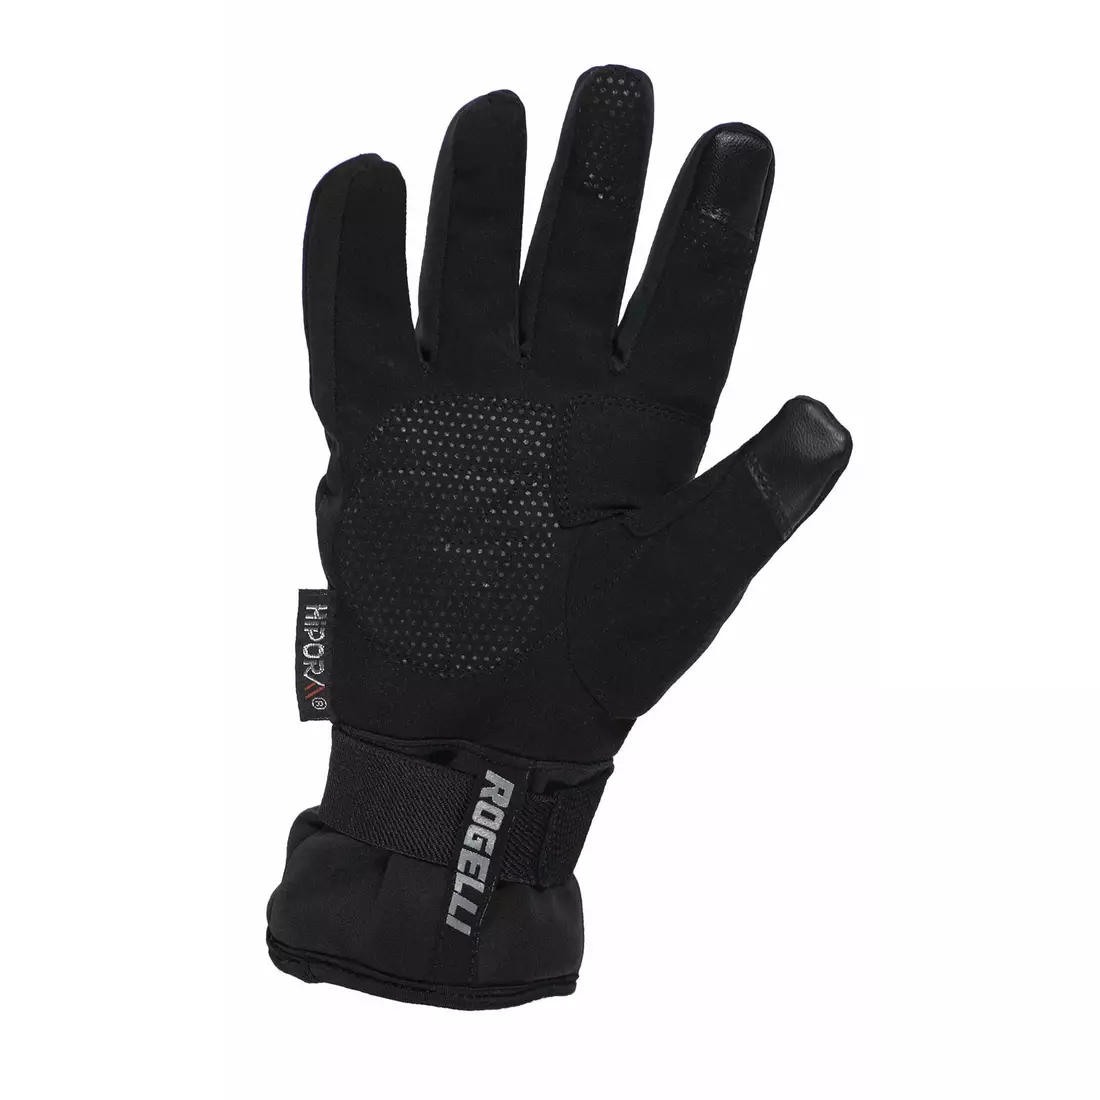 Mănuși de iarnă pentru ciclism ROGELLI SHIELD, HIPORA, negre